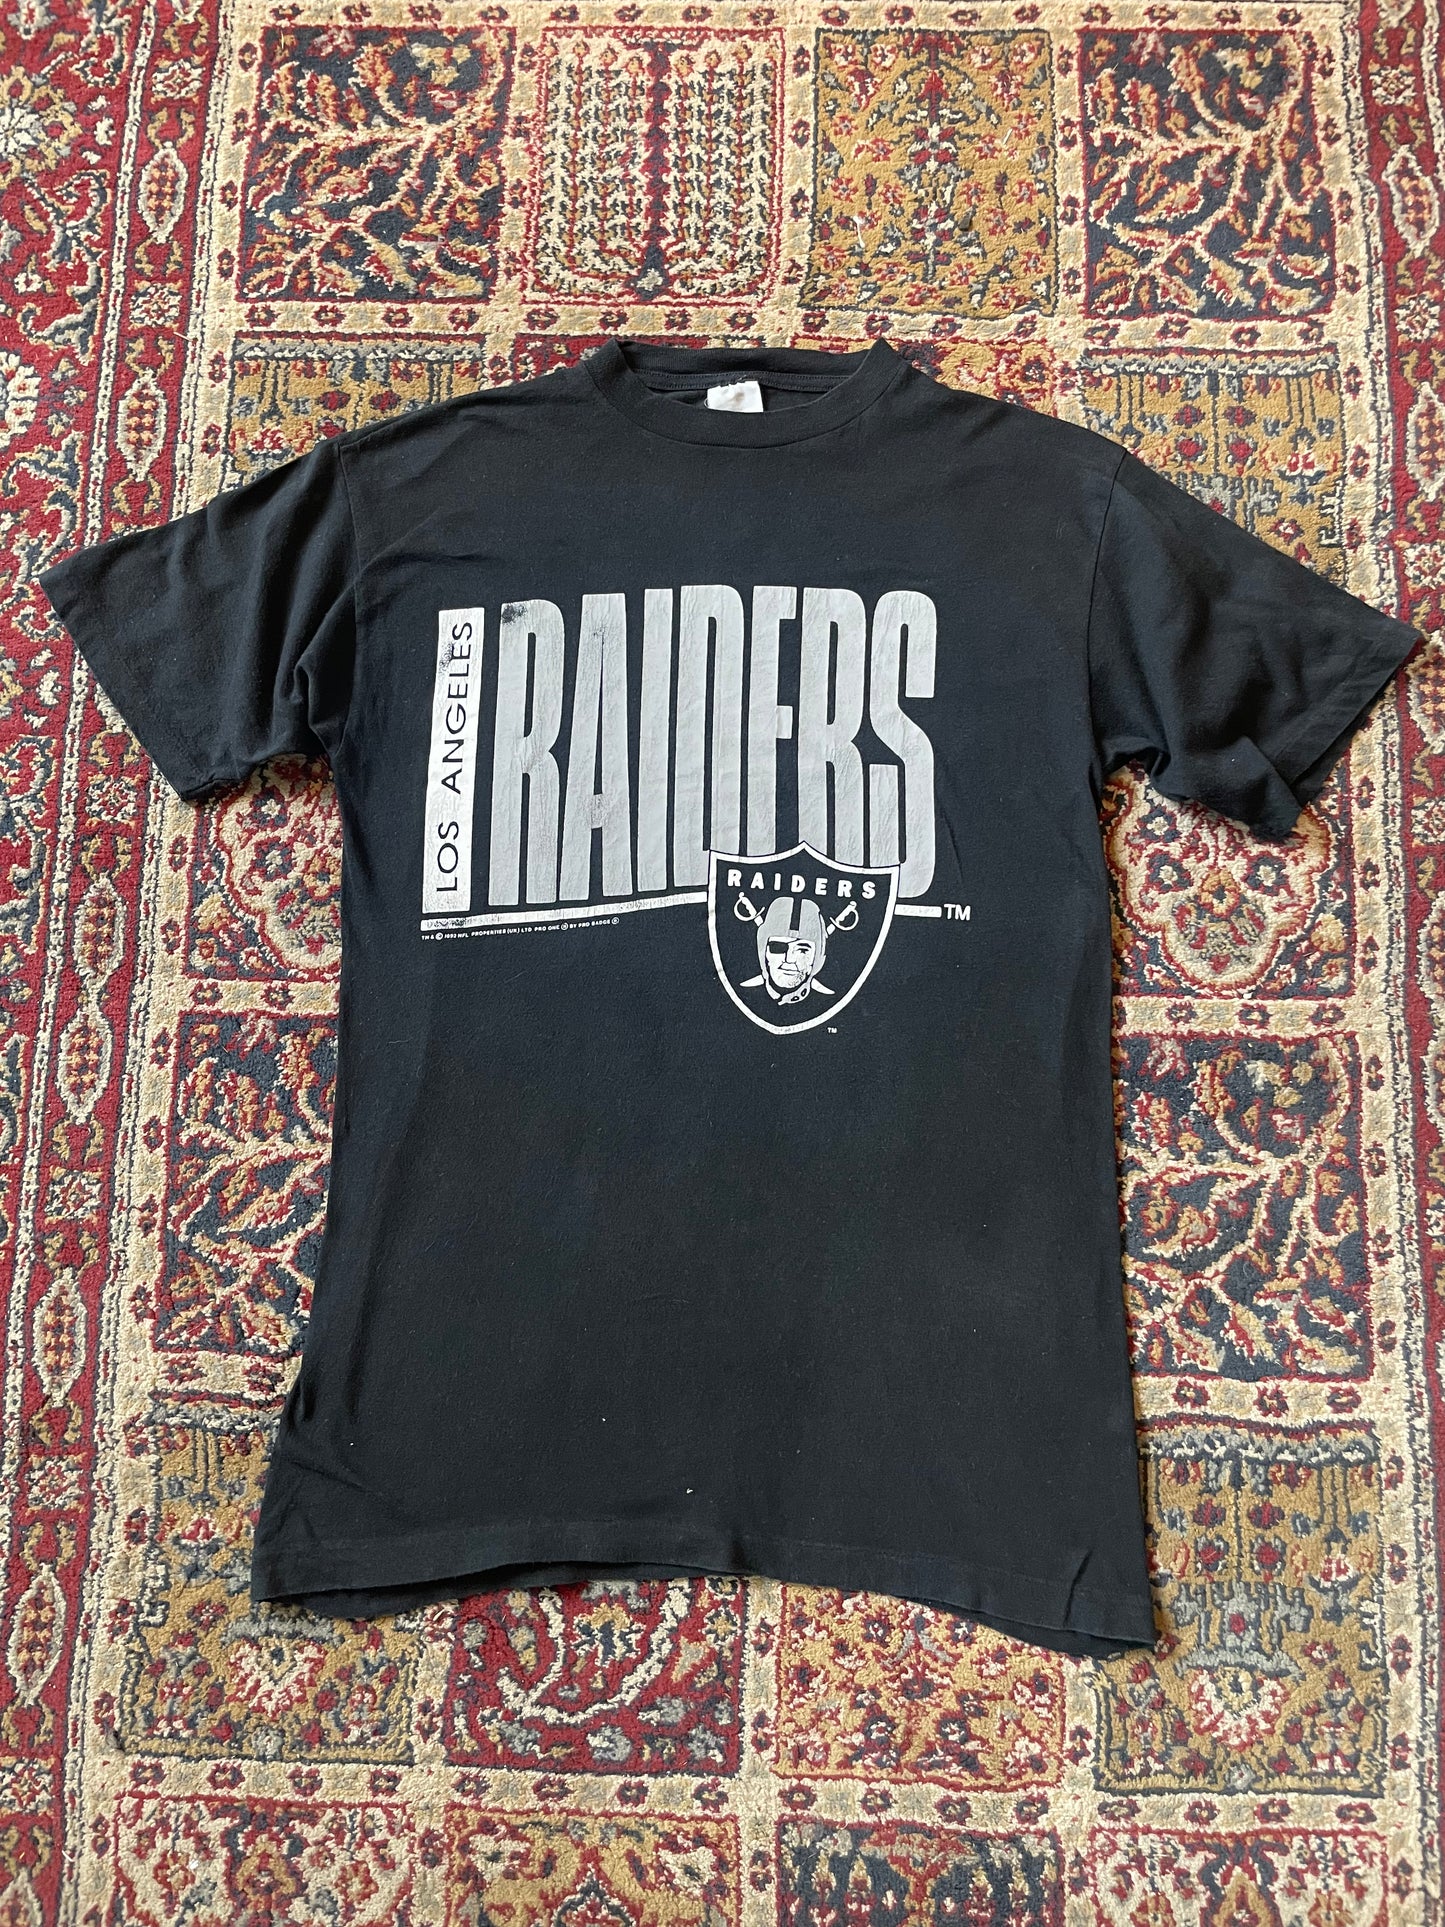 1992 LA Raiders Pro One Single Stitch shirt (M)